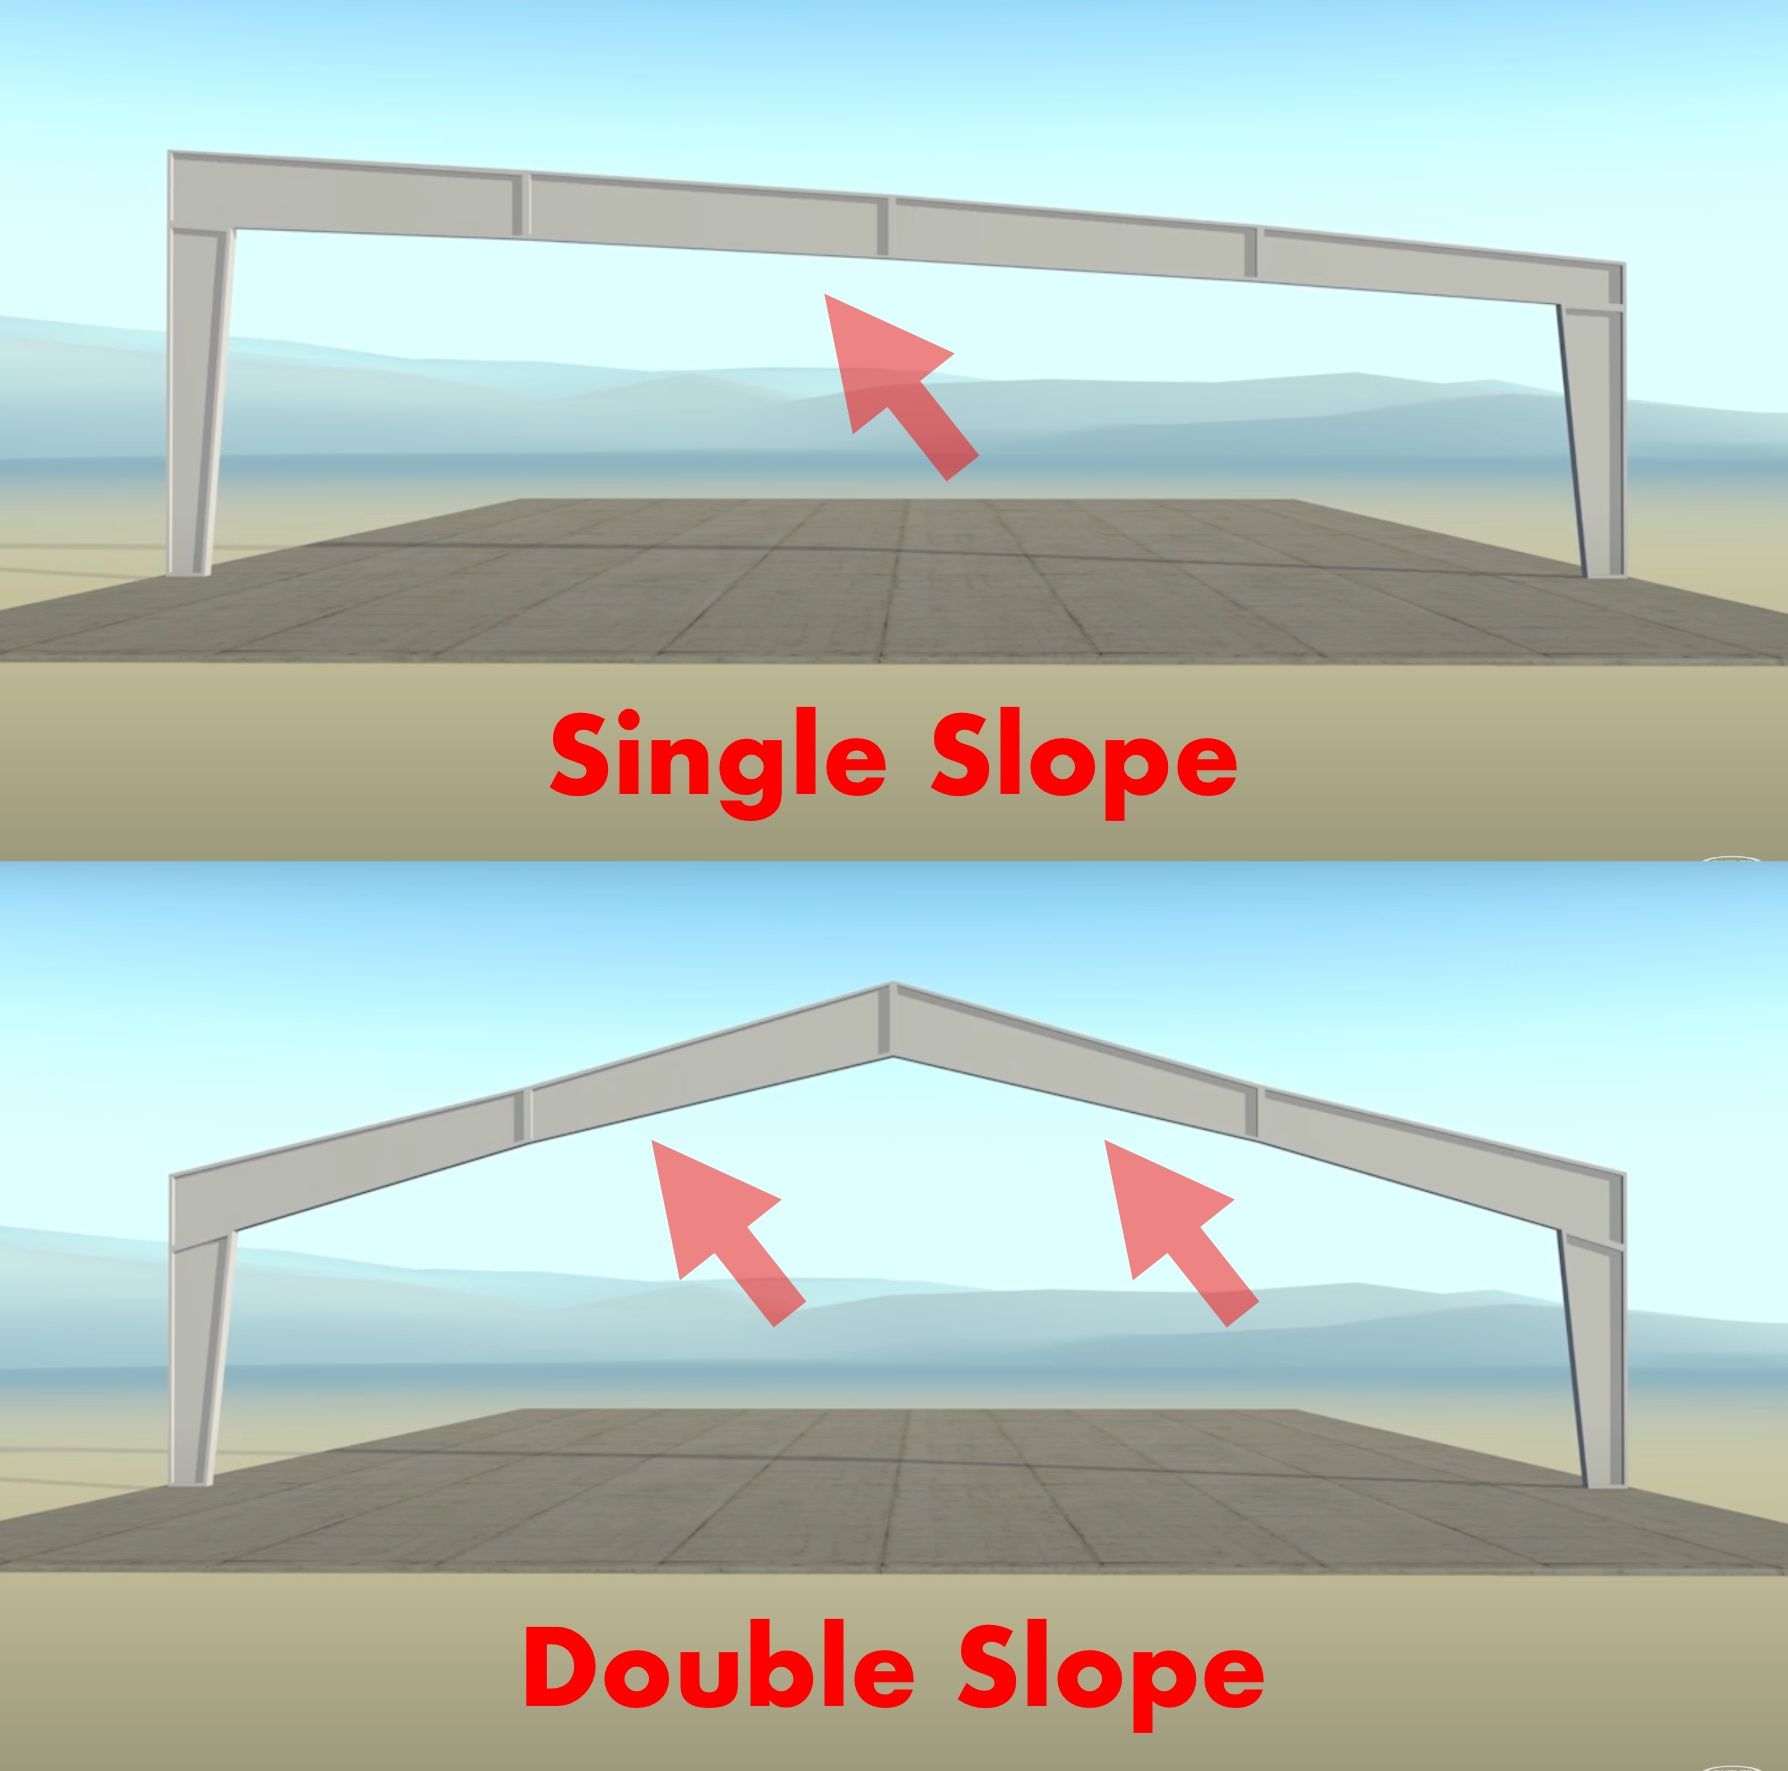 butler single slope vs double slope.jpg